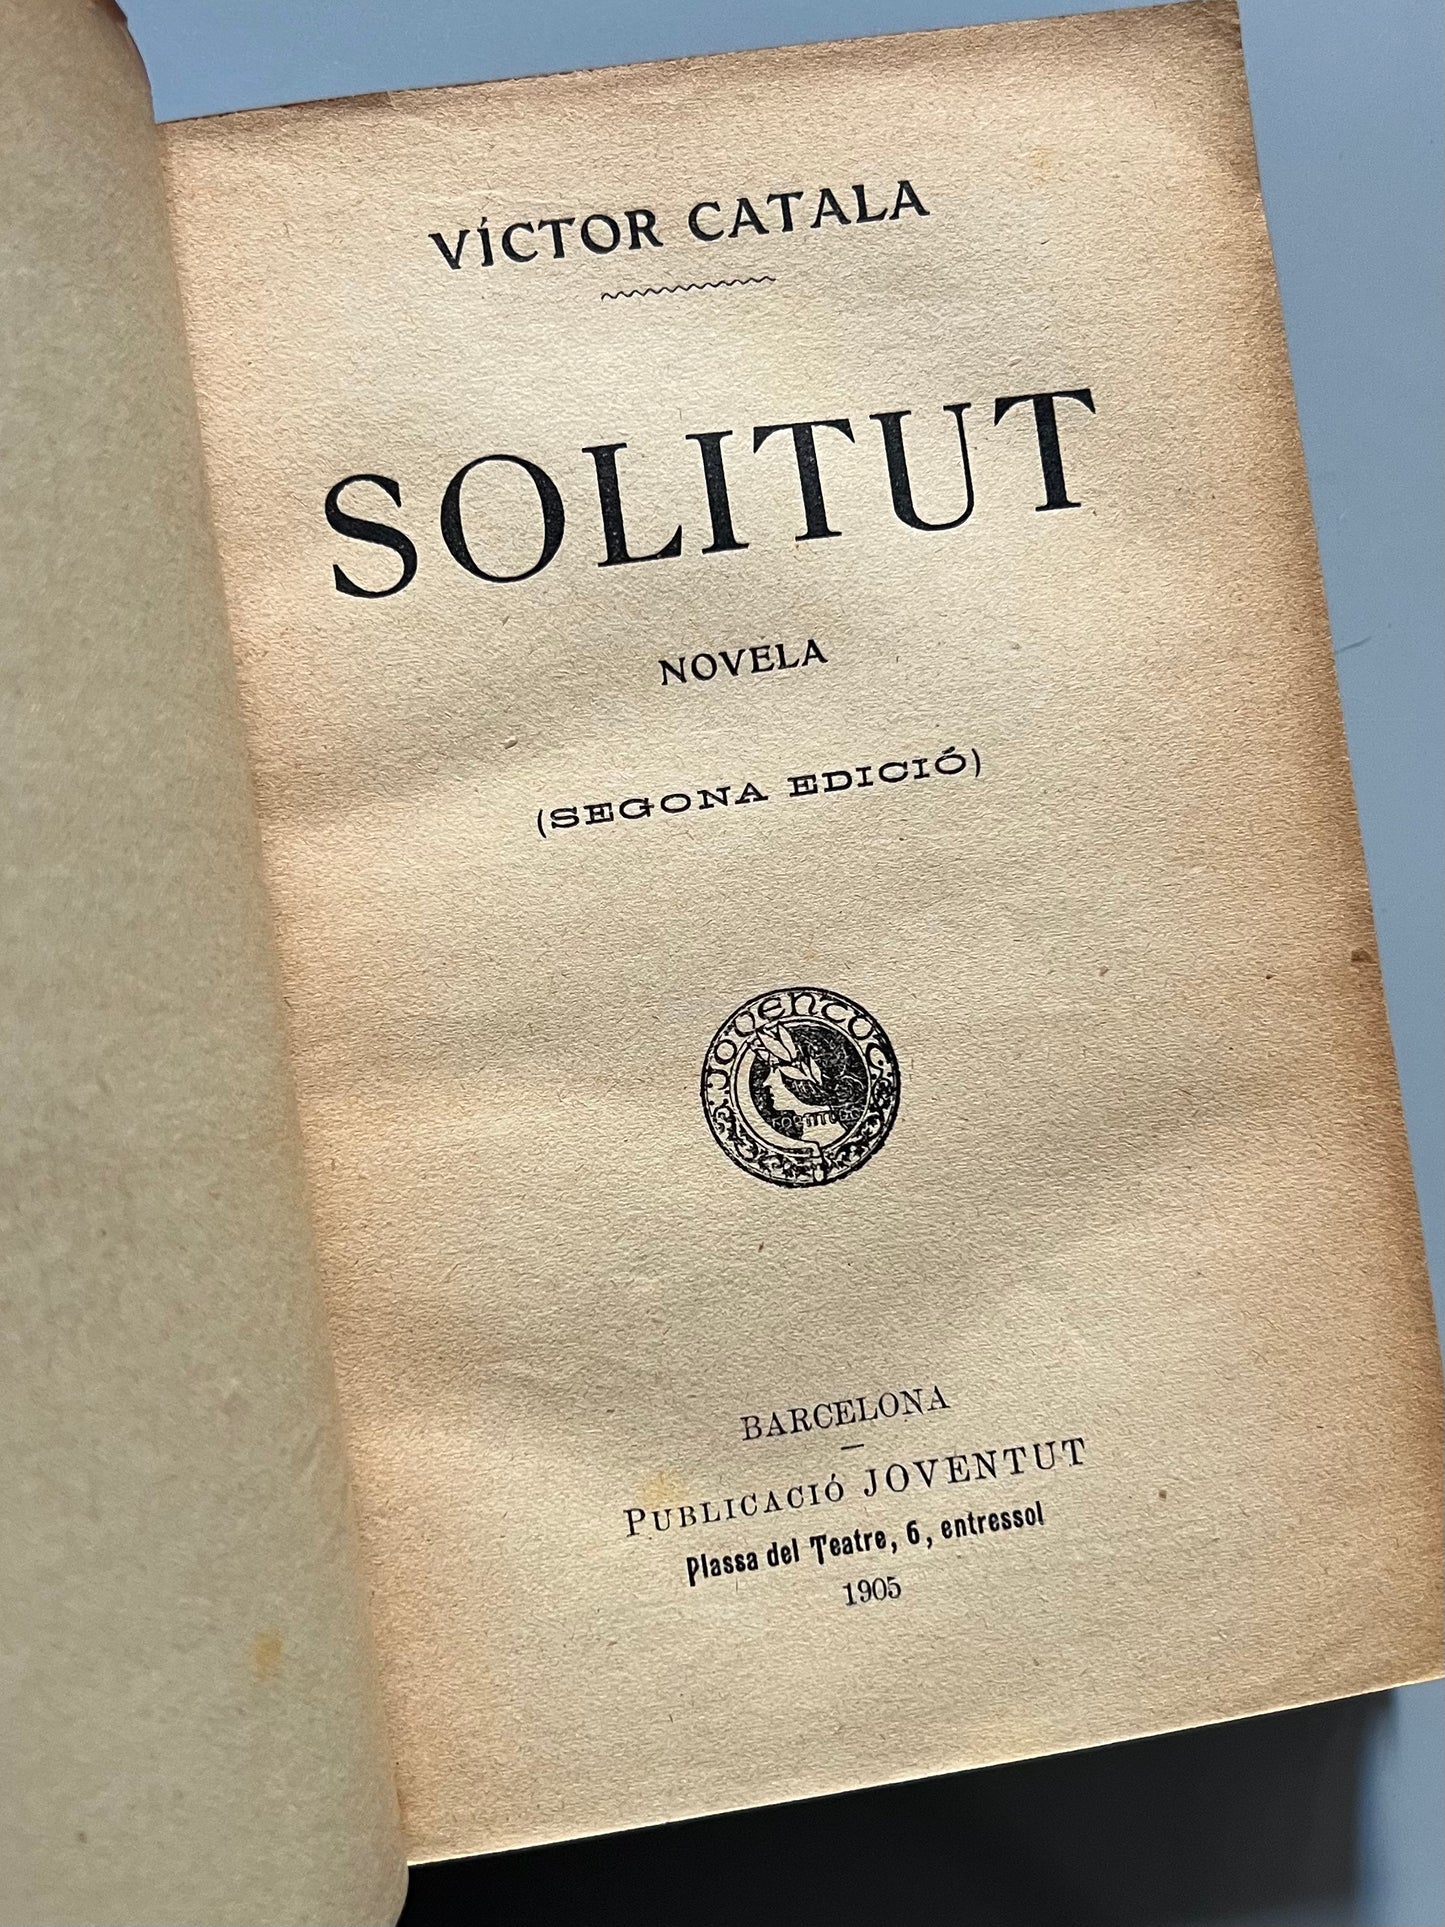 Solitut (Solitud), Victor Català. Segunda edición - Publicació Joventut, 1905